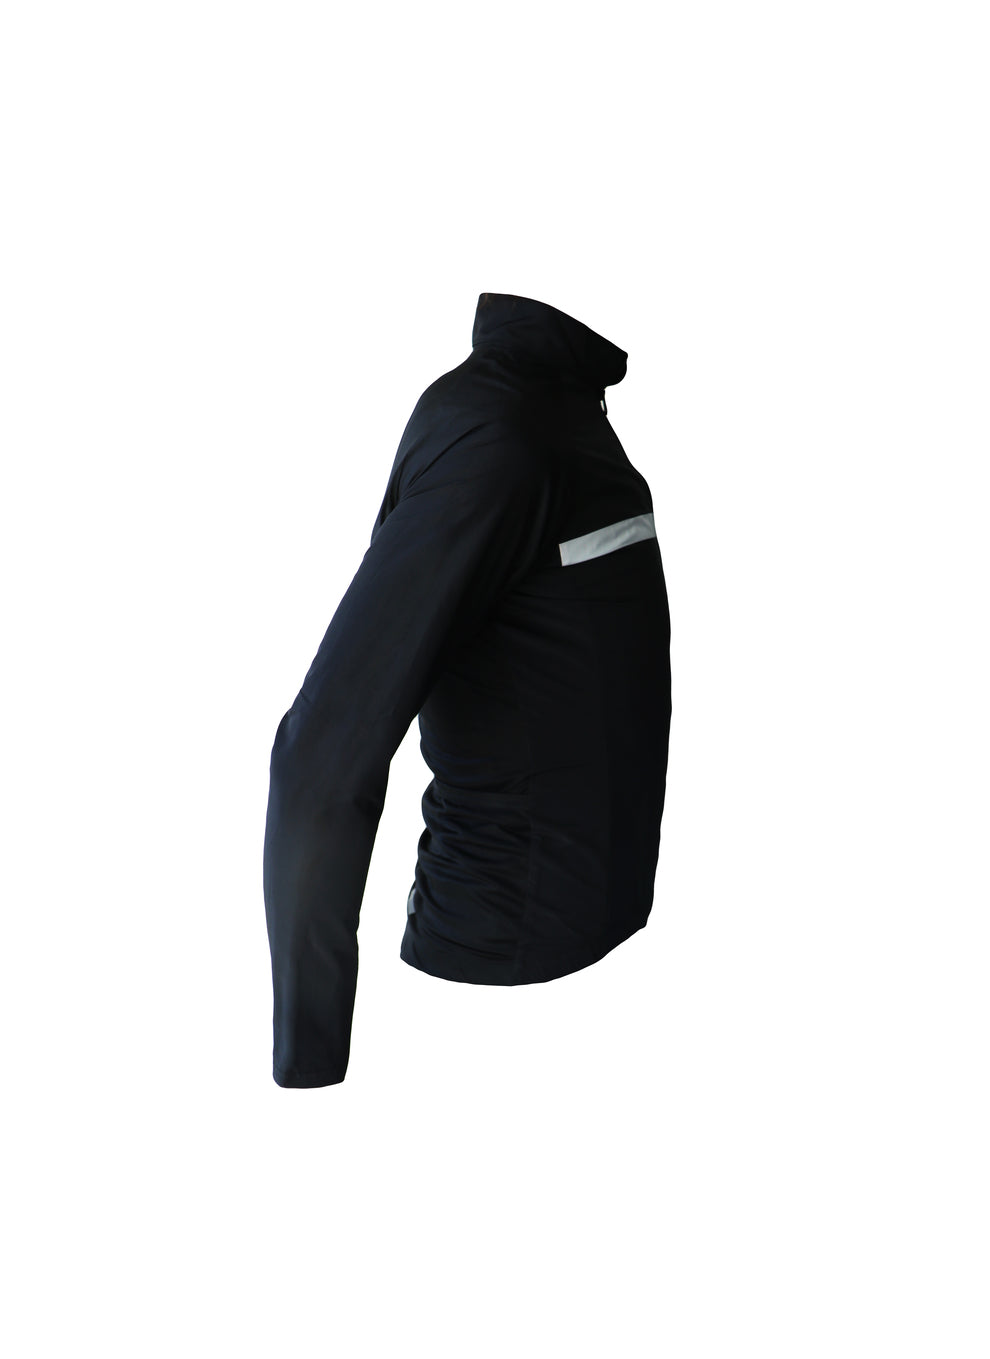 Vélo textile - veste manches longues, coupe vent noir et blanc